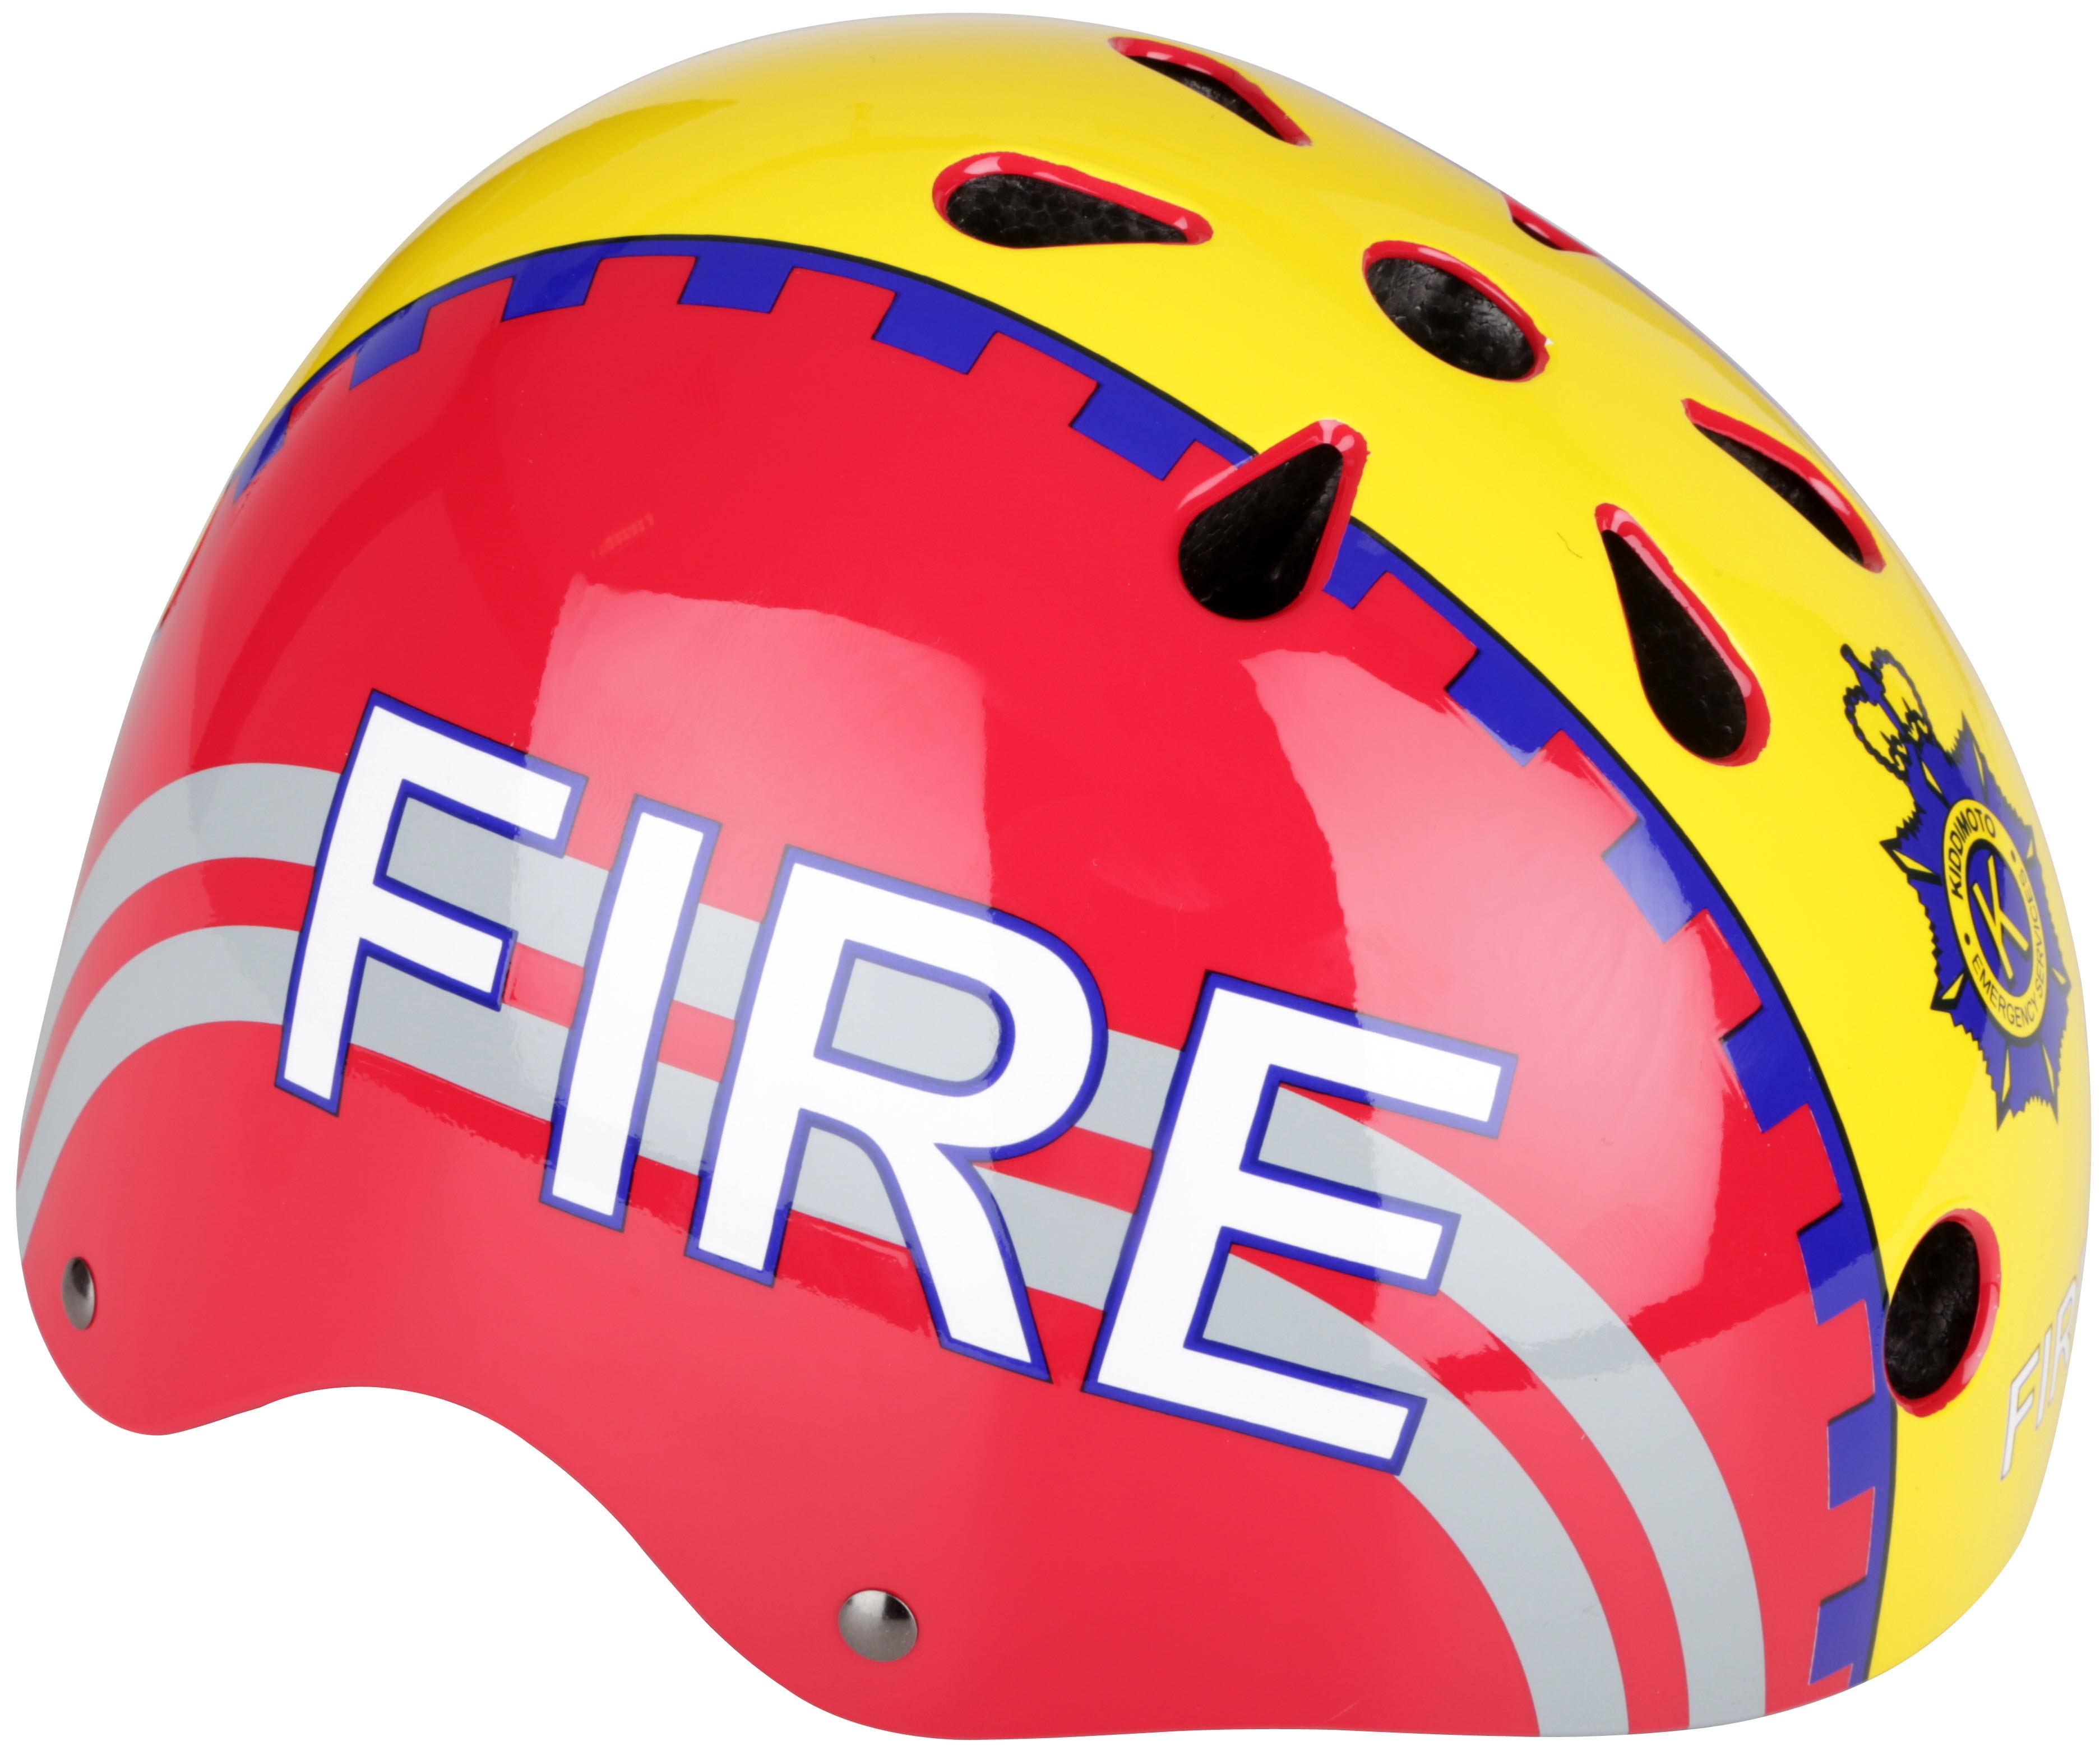 Kiddimoto Fire Kids Helmet - Medium (53-58Cm)